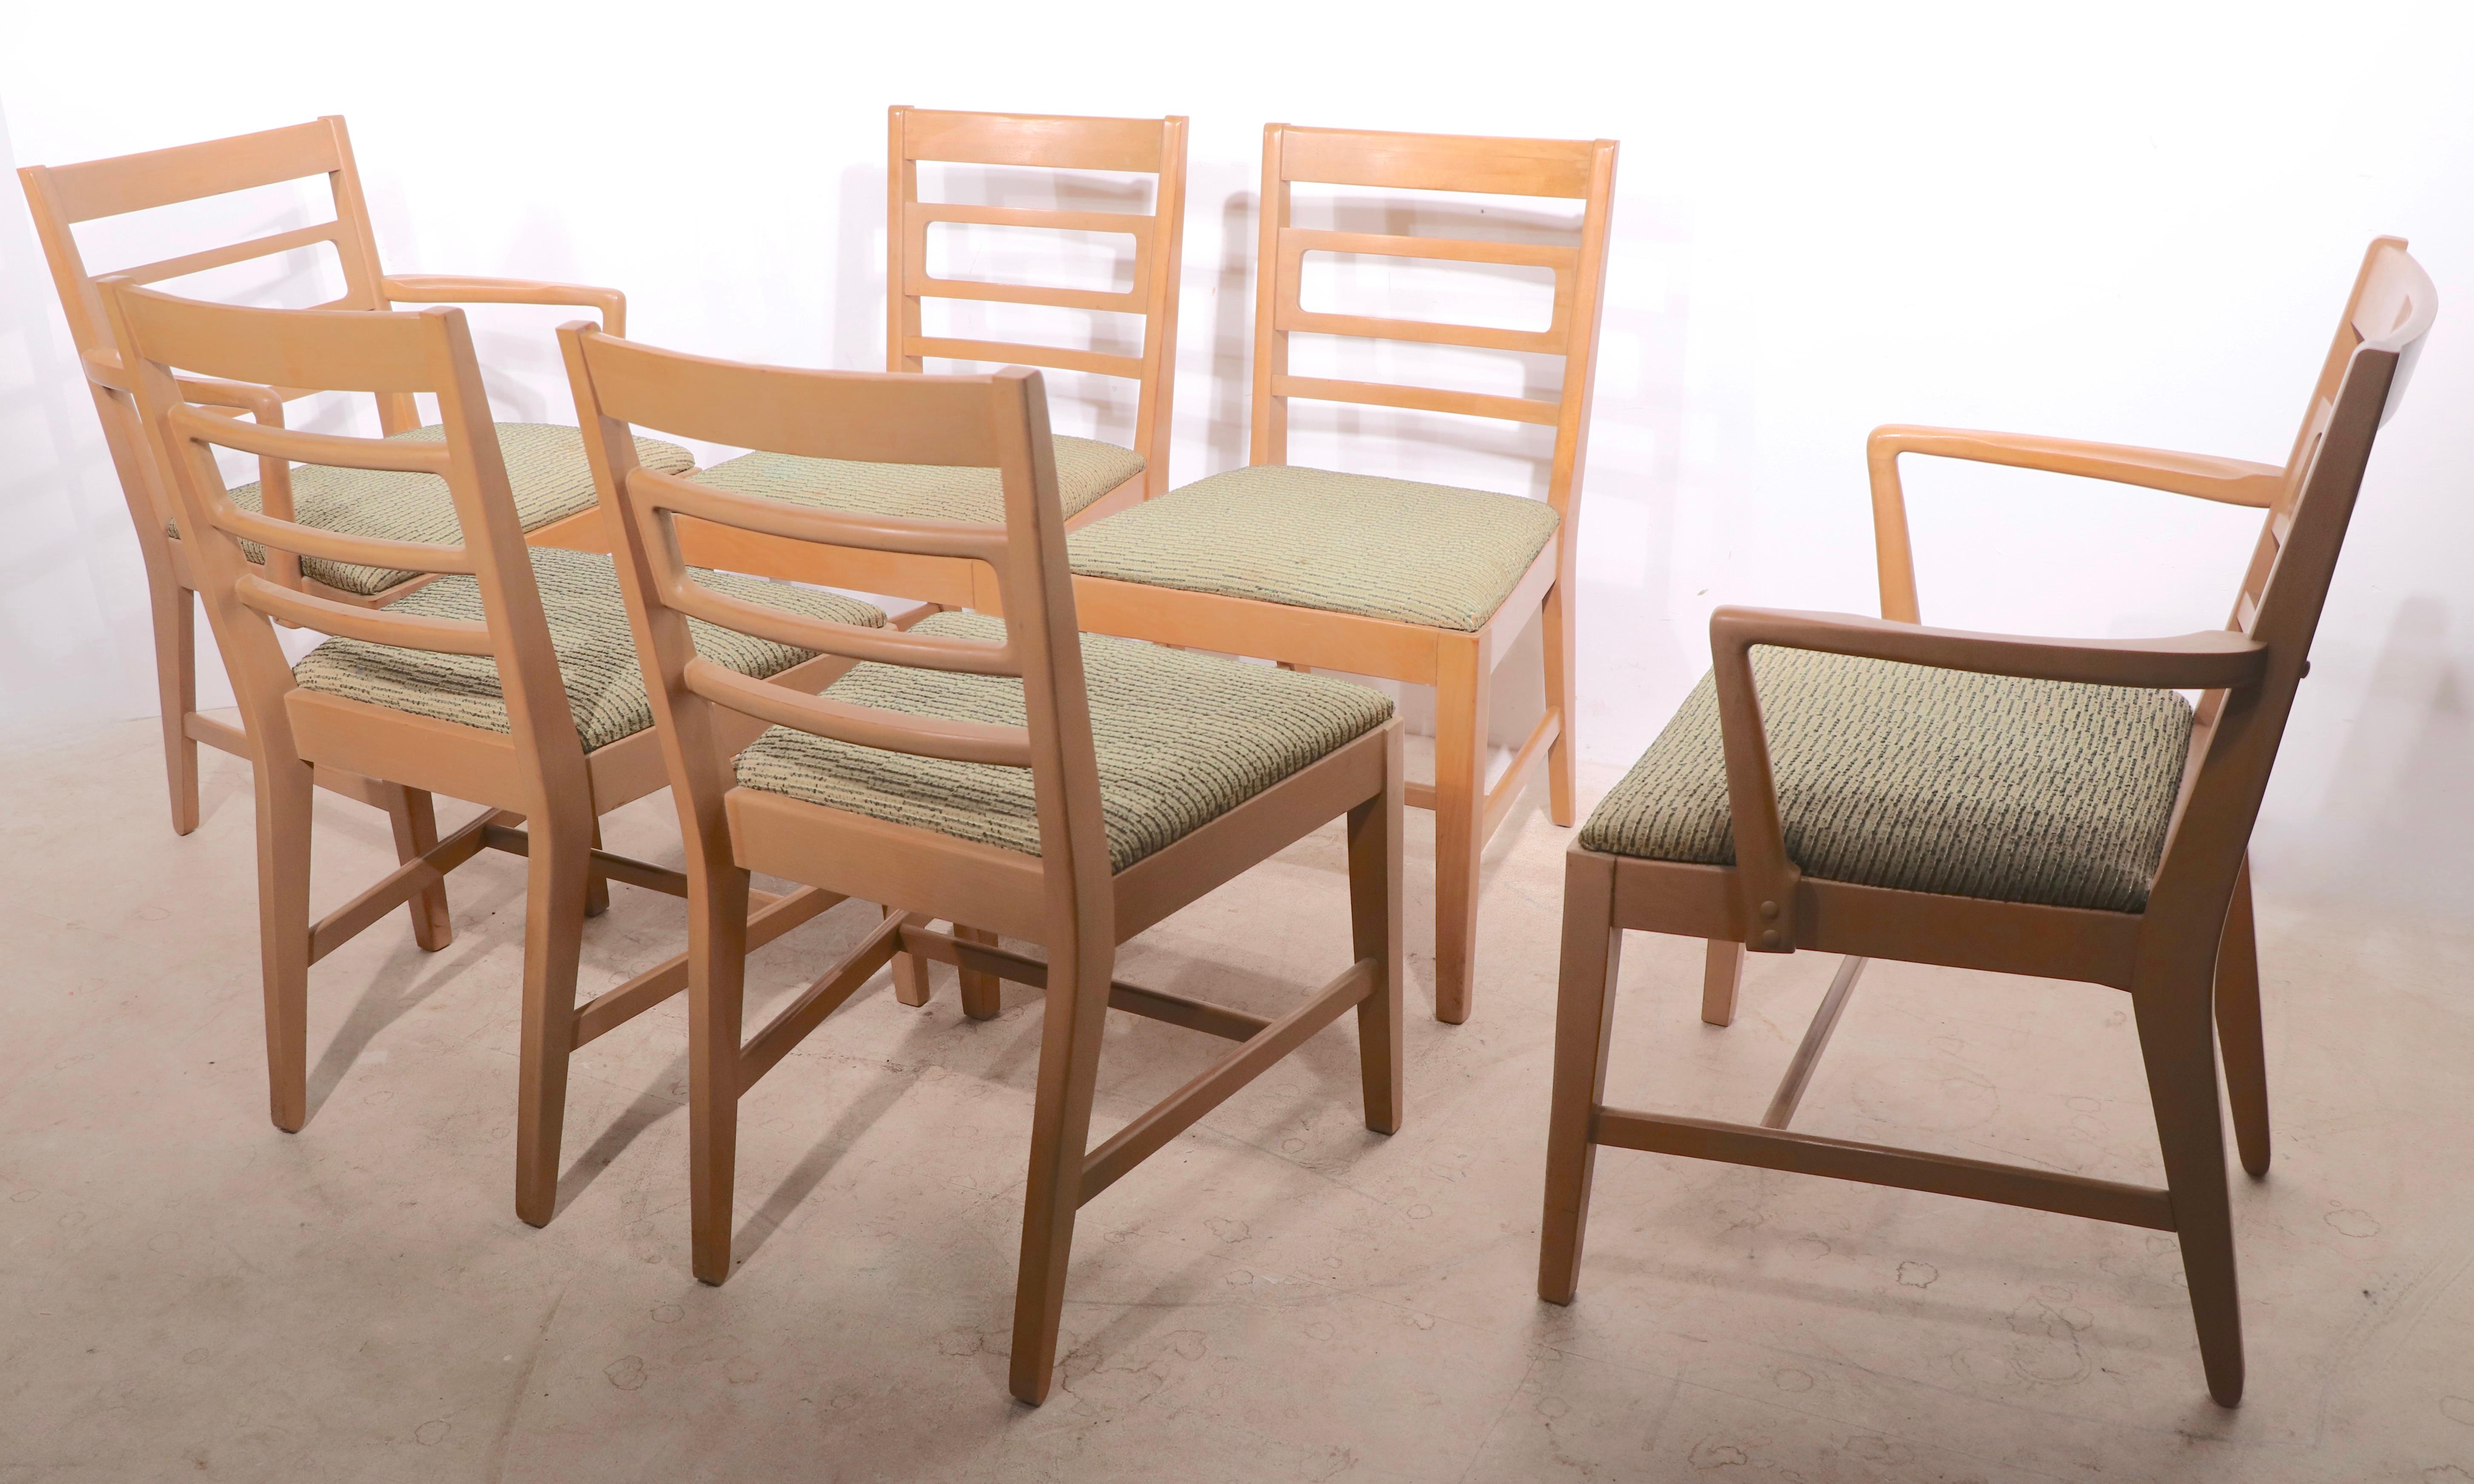 Schickes Set aus sechs Esszimmerstühlen, entworfen von Edward Wormley als Teil der klassischen Precedent Line für Drexel. Das Set besteht aus zwei Sesseln und vier Beistellstühlen. Sie befinden sich in einem sehr guten, sauberen Originalzustand und